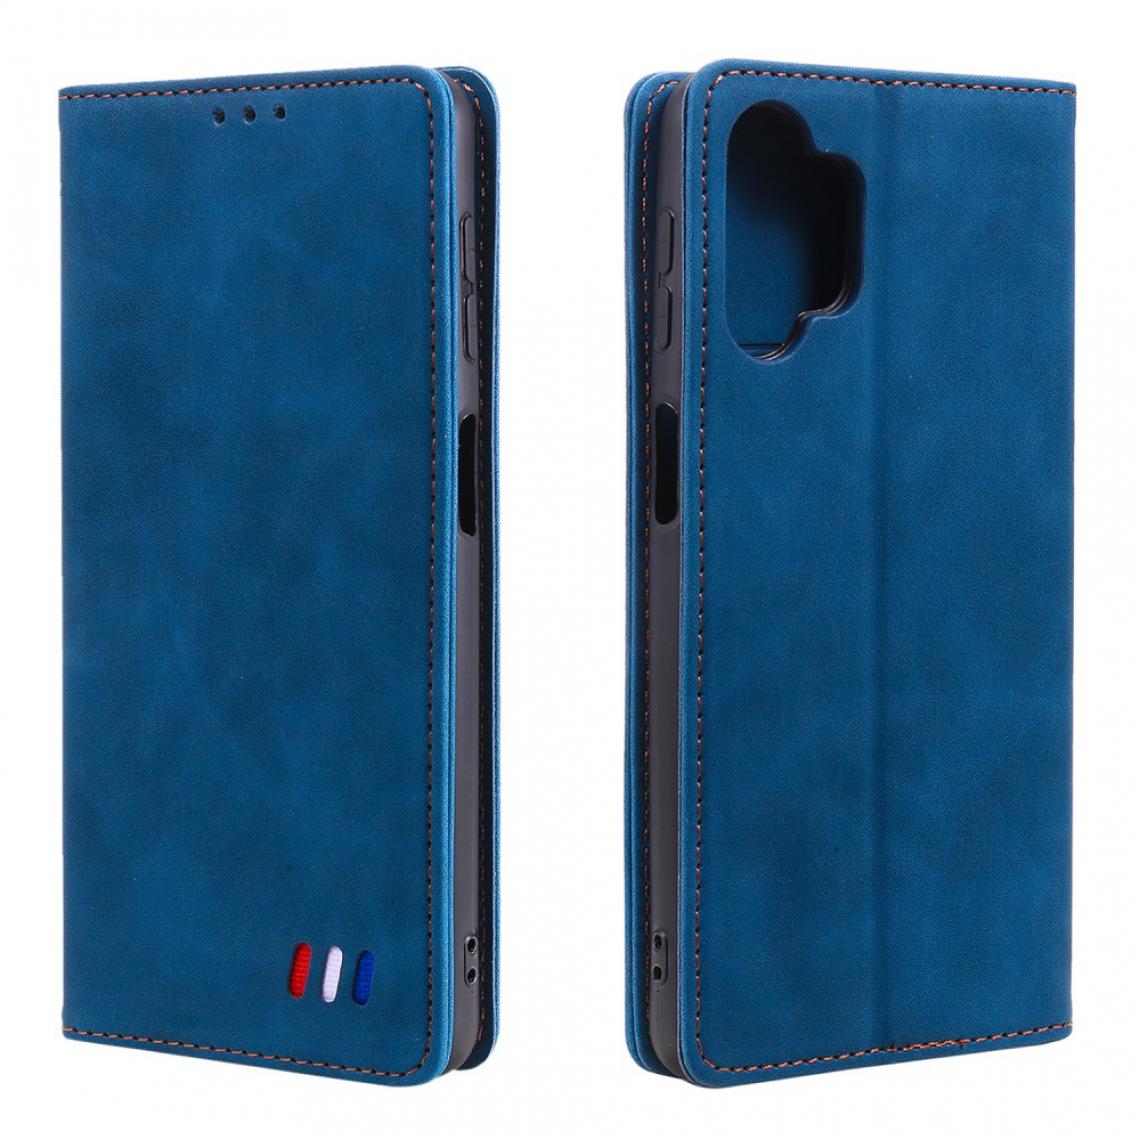 Other - Etui en PU Conception de décor d'ornement tricolore bleu pour votre Samsung Galaxy A32 5G - Coque, étui smartphone